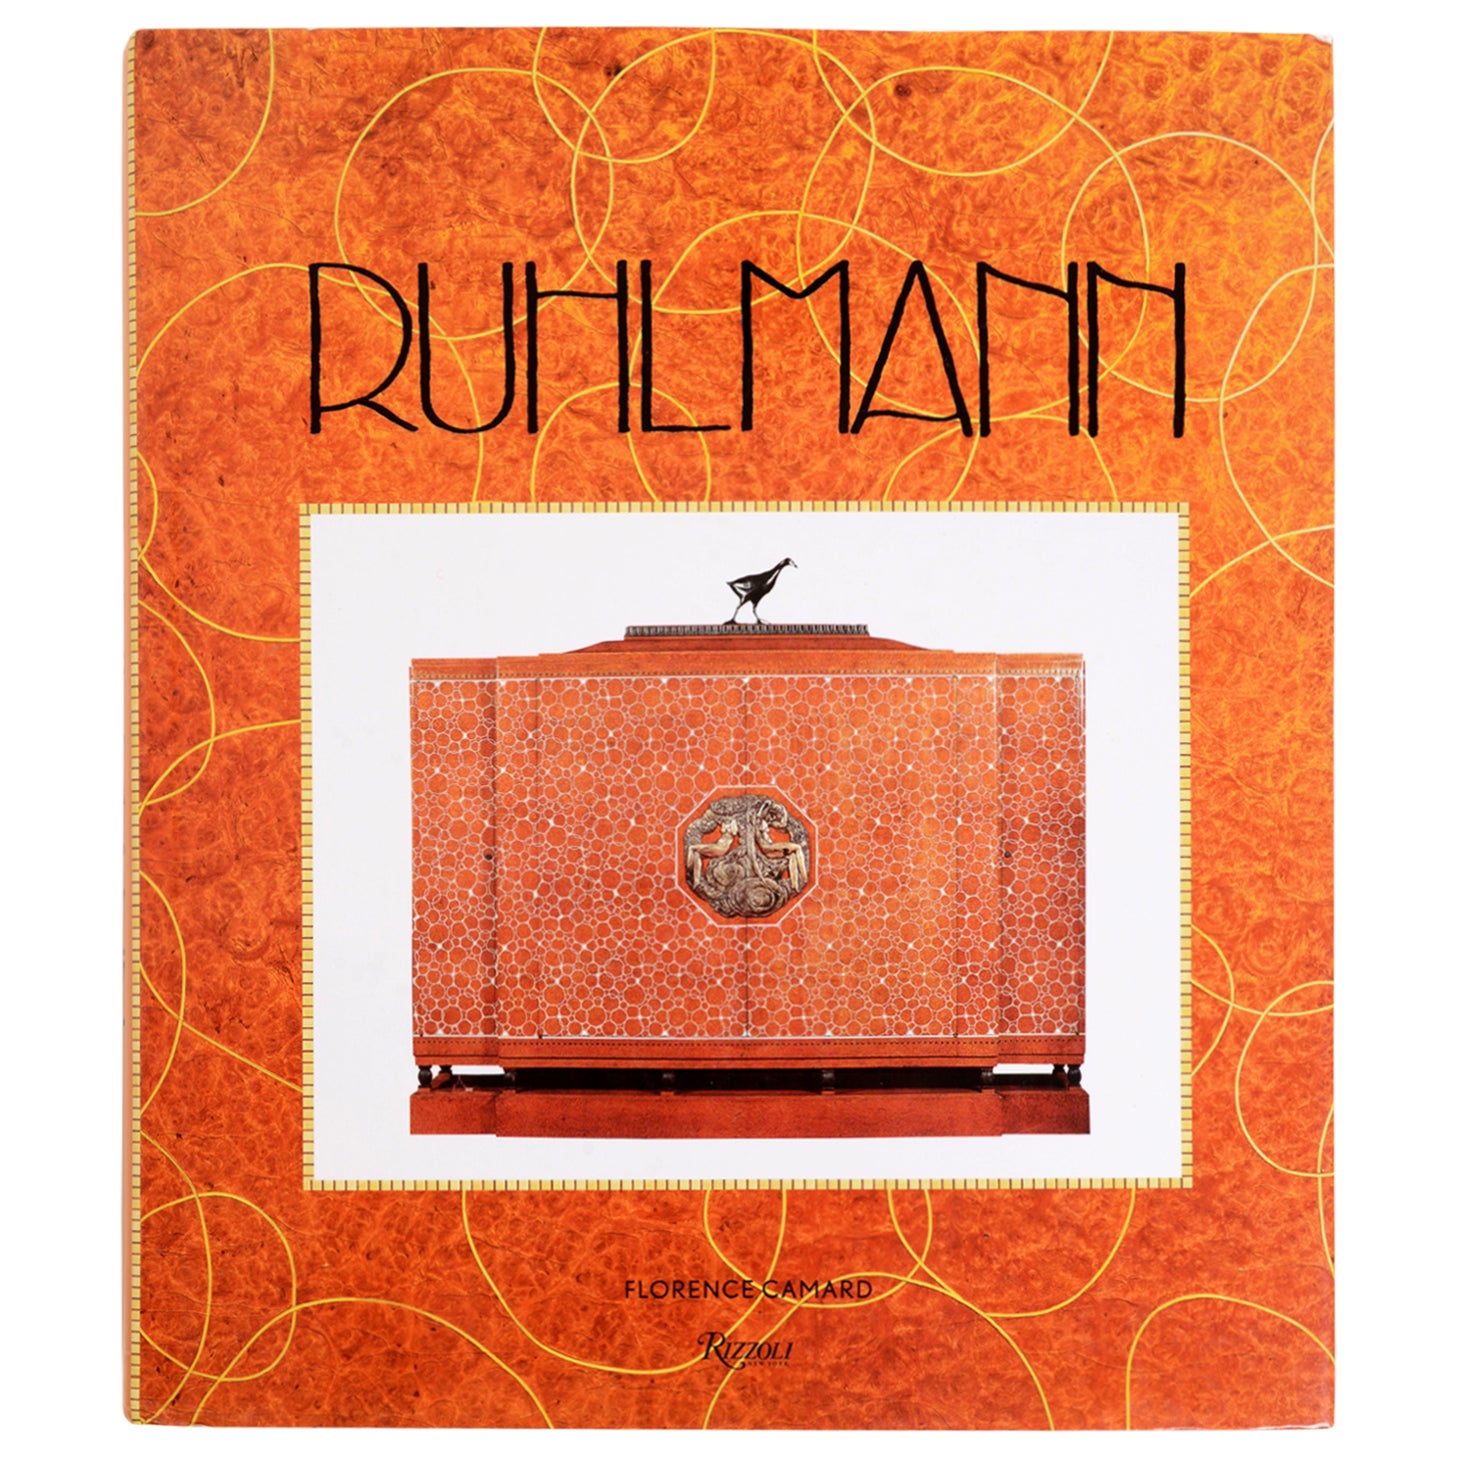 Ruhlmann by Florence Camard, 1st Ed For Sale